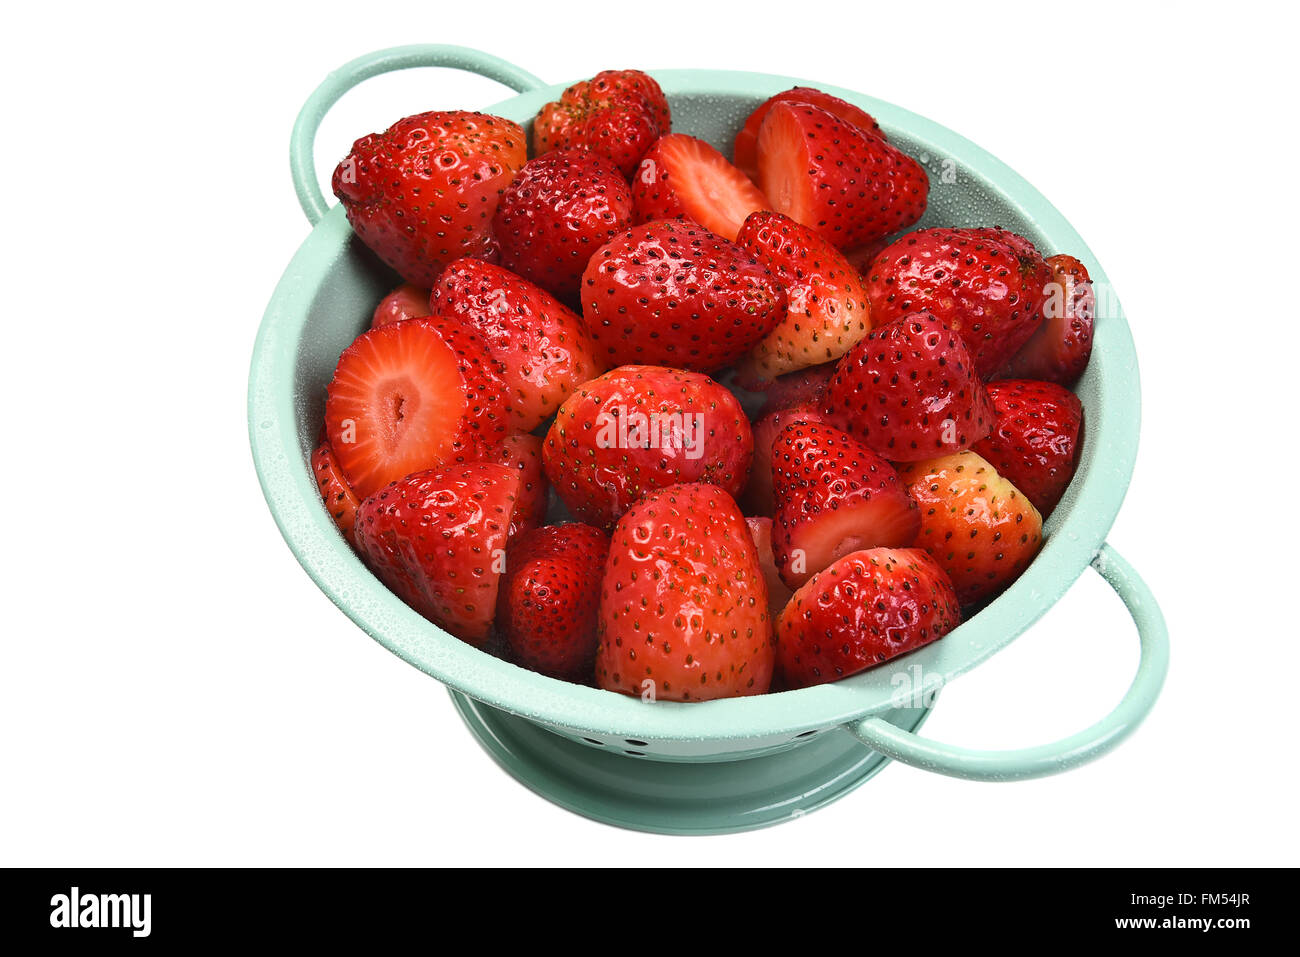 Vue de dessus d'une passoire remplie de fraises, isolé sur blanc. Banque D'Images